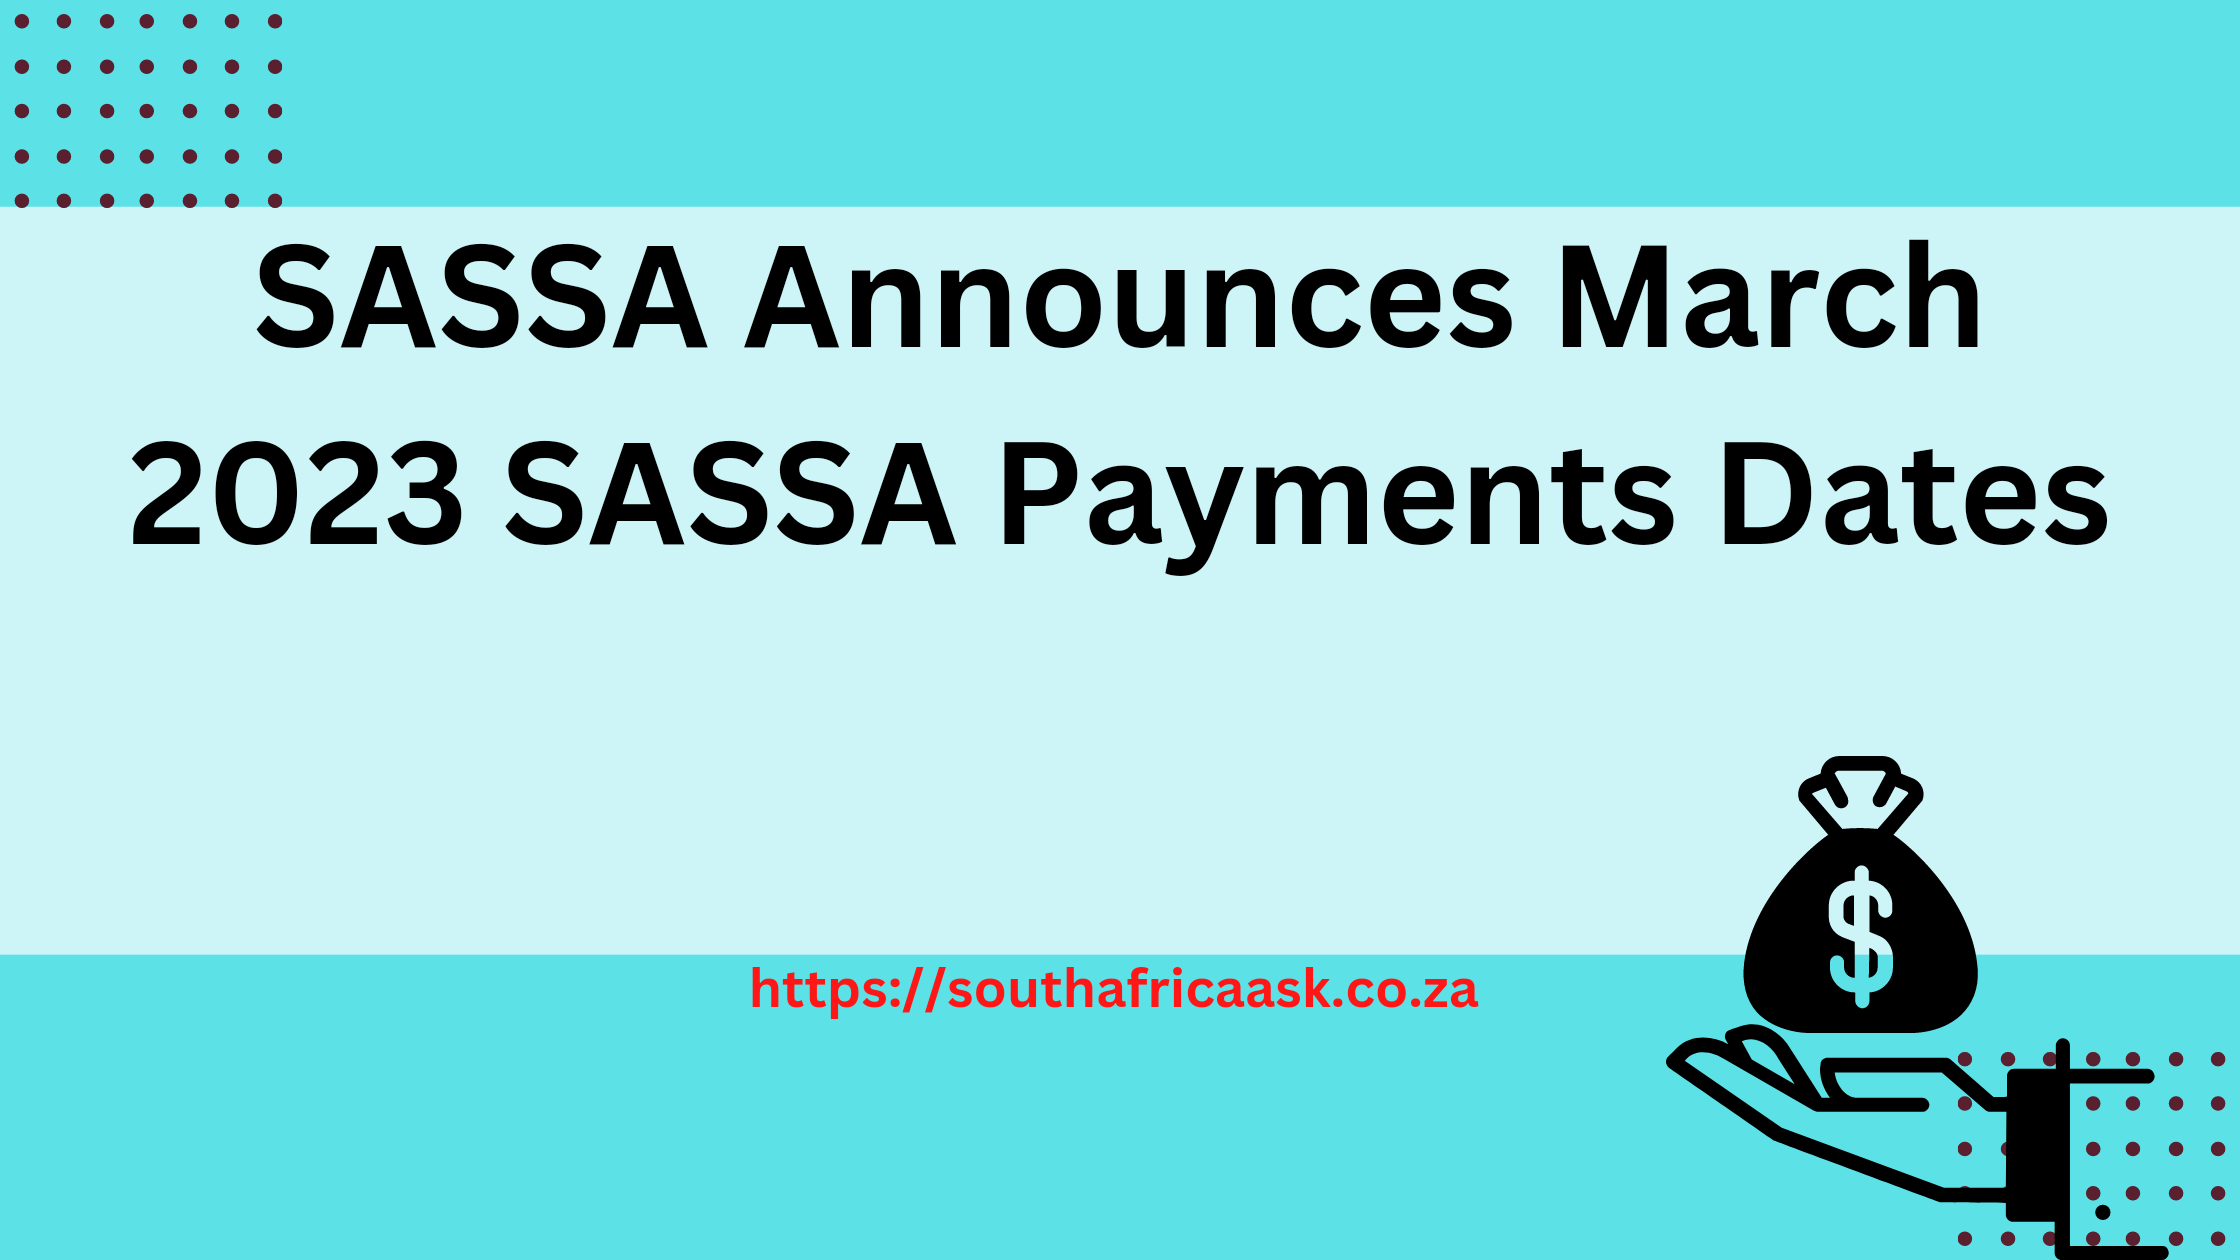 SASSA Announces March 2023 SASSA Payments Dates